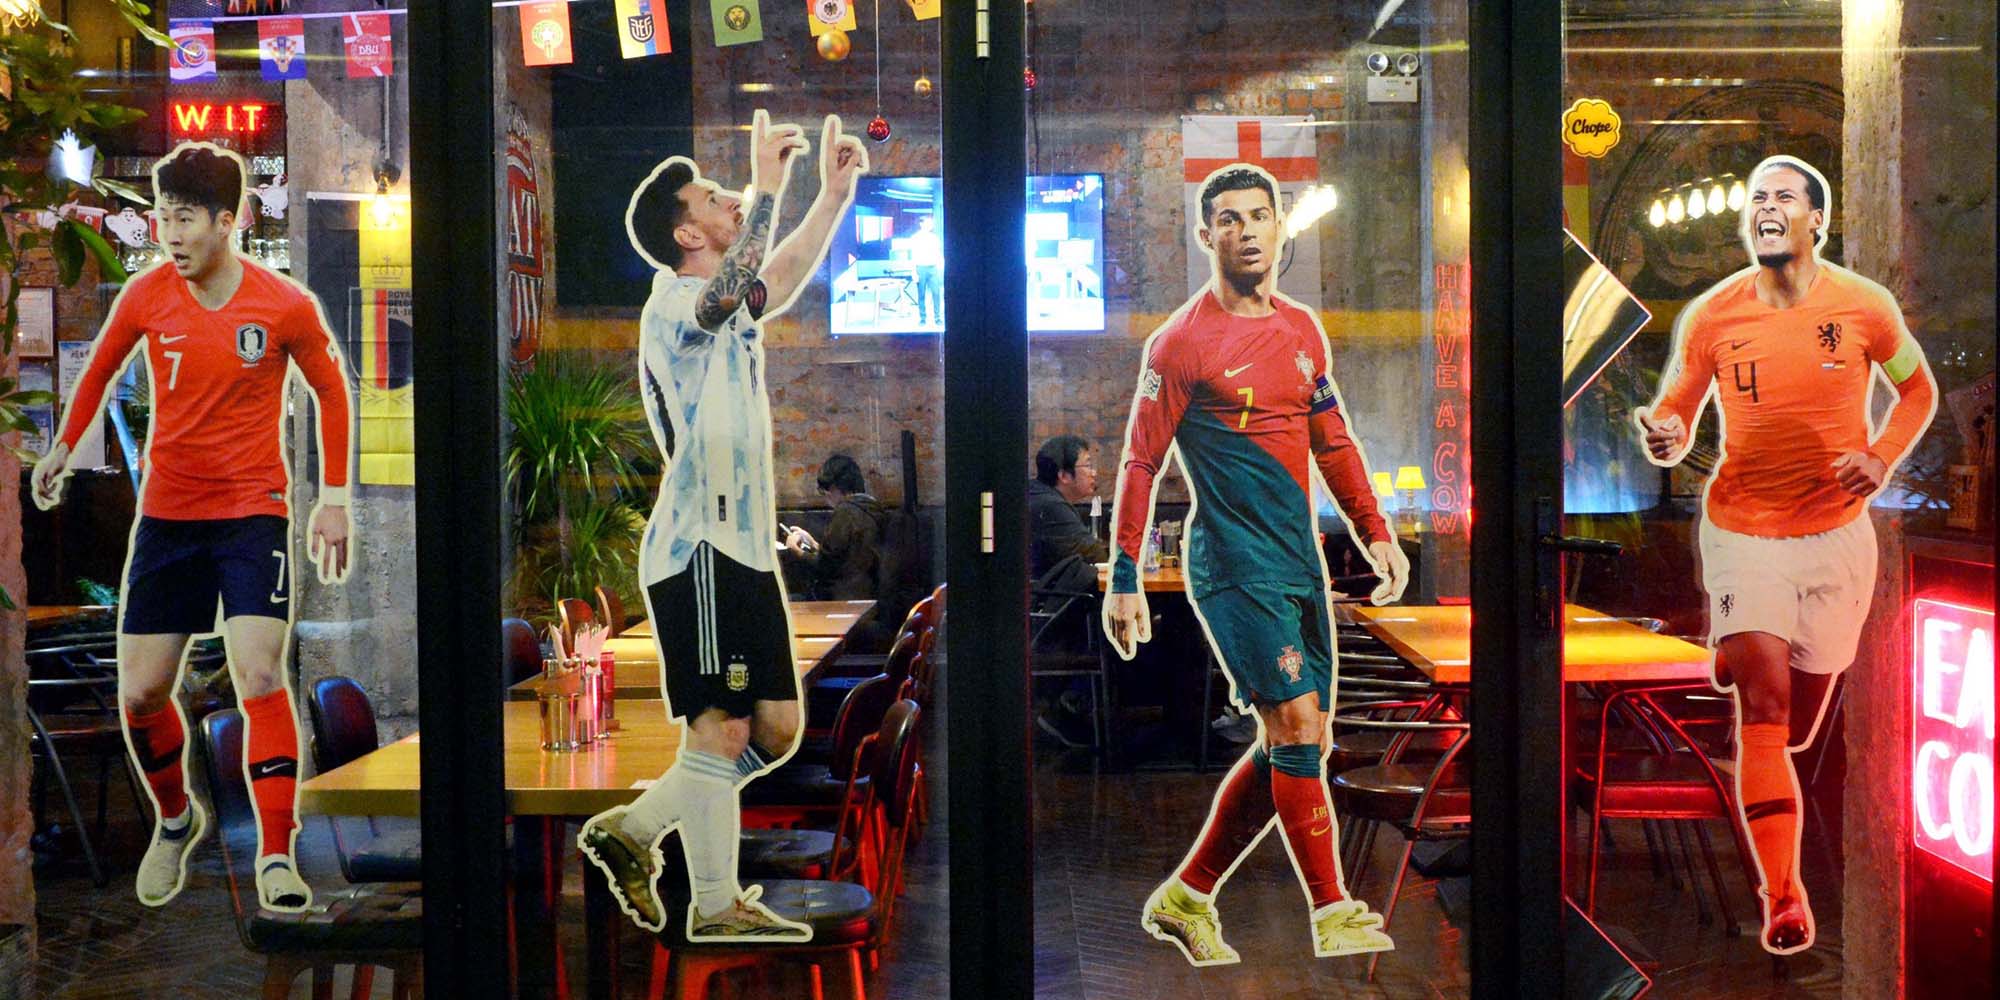 Les fans de football chinois réservent des chambres d’hôtel pour regarder la Coupe du monde